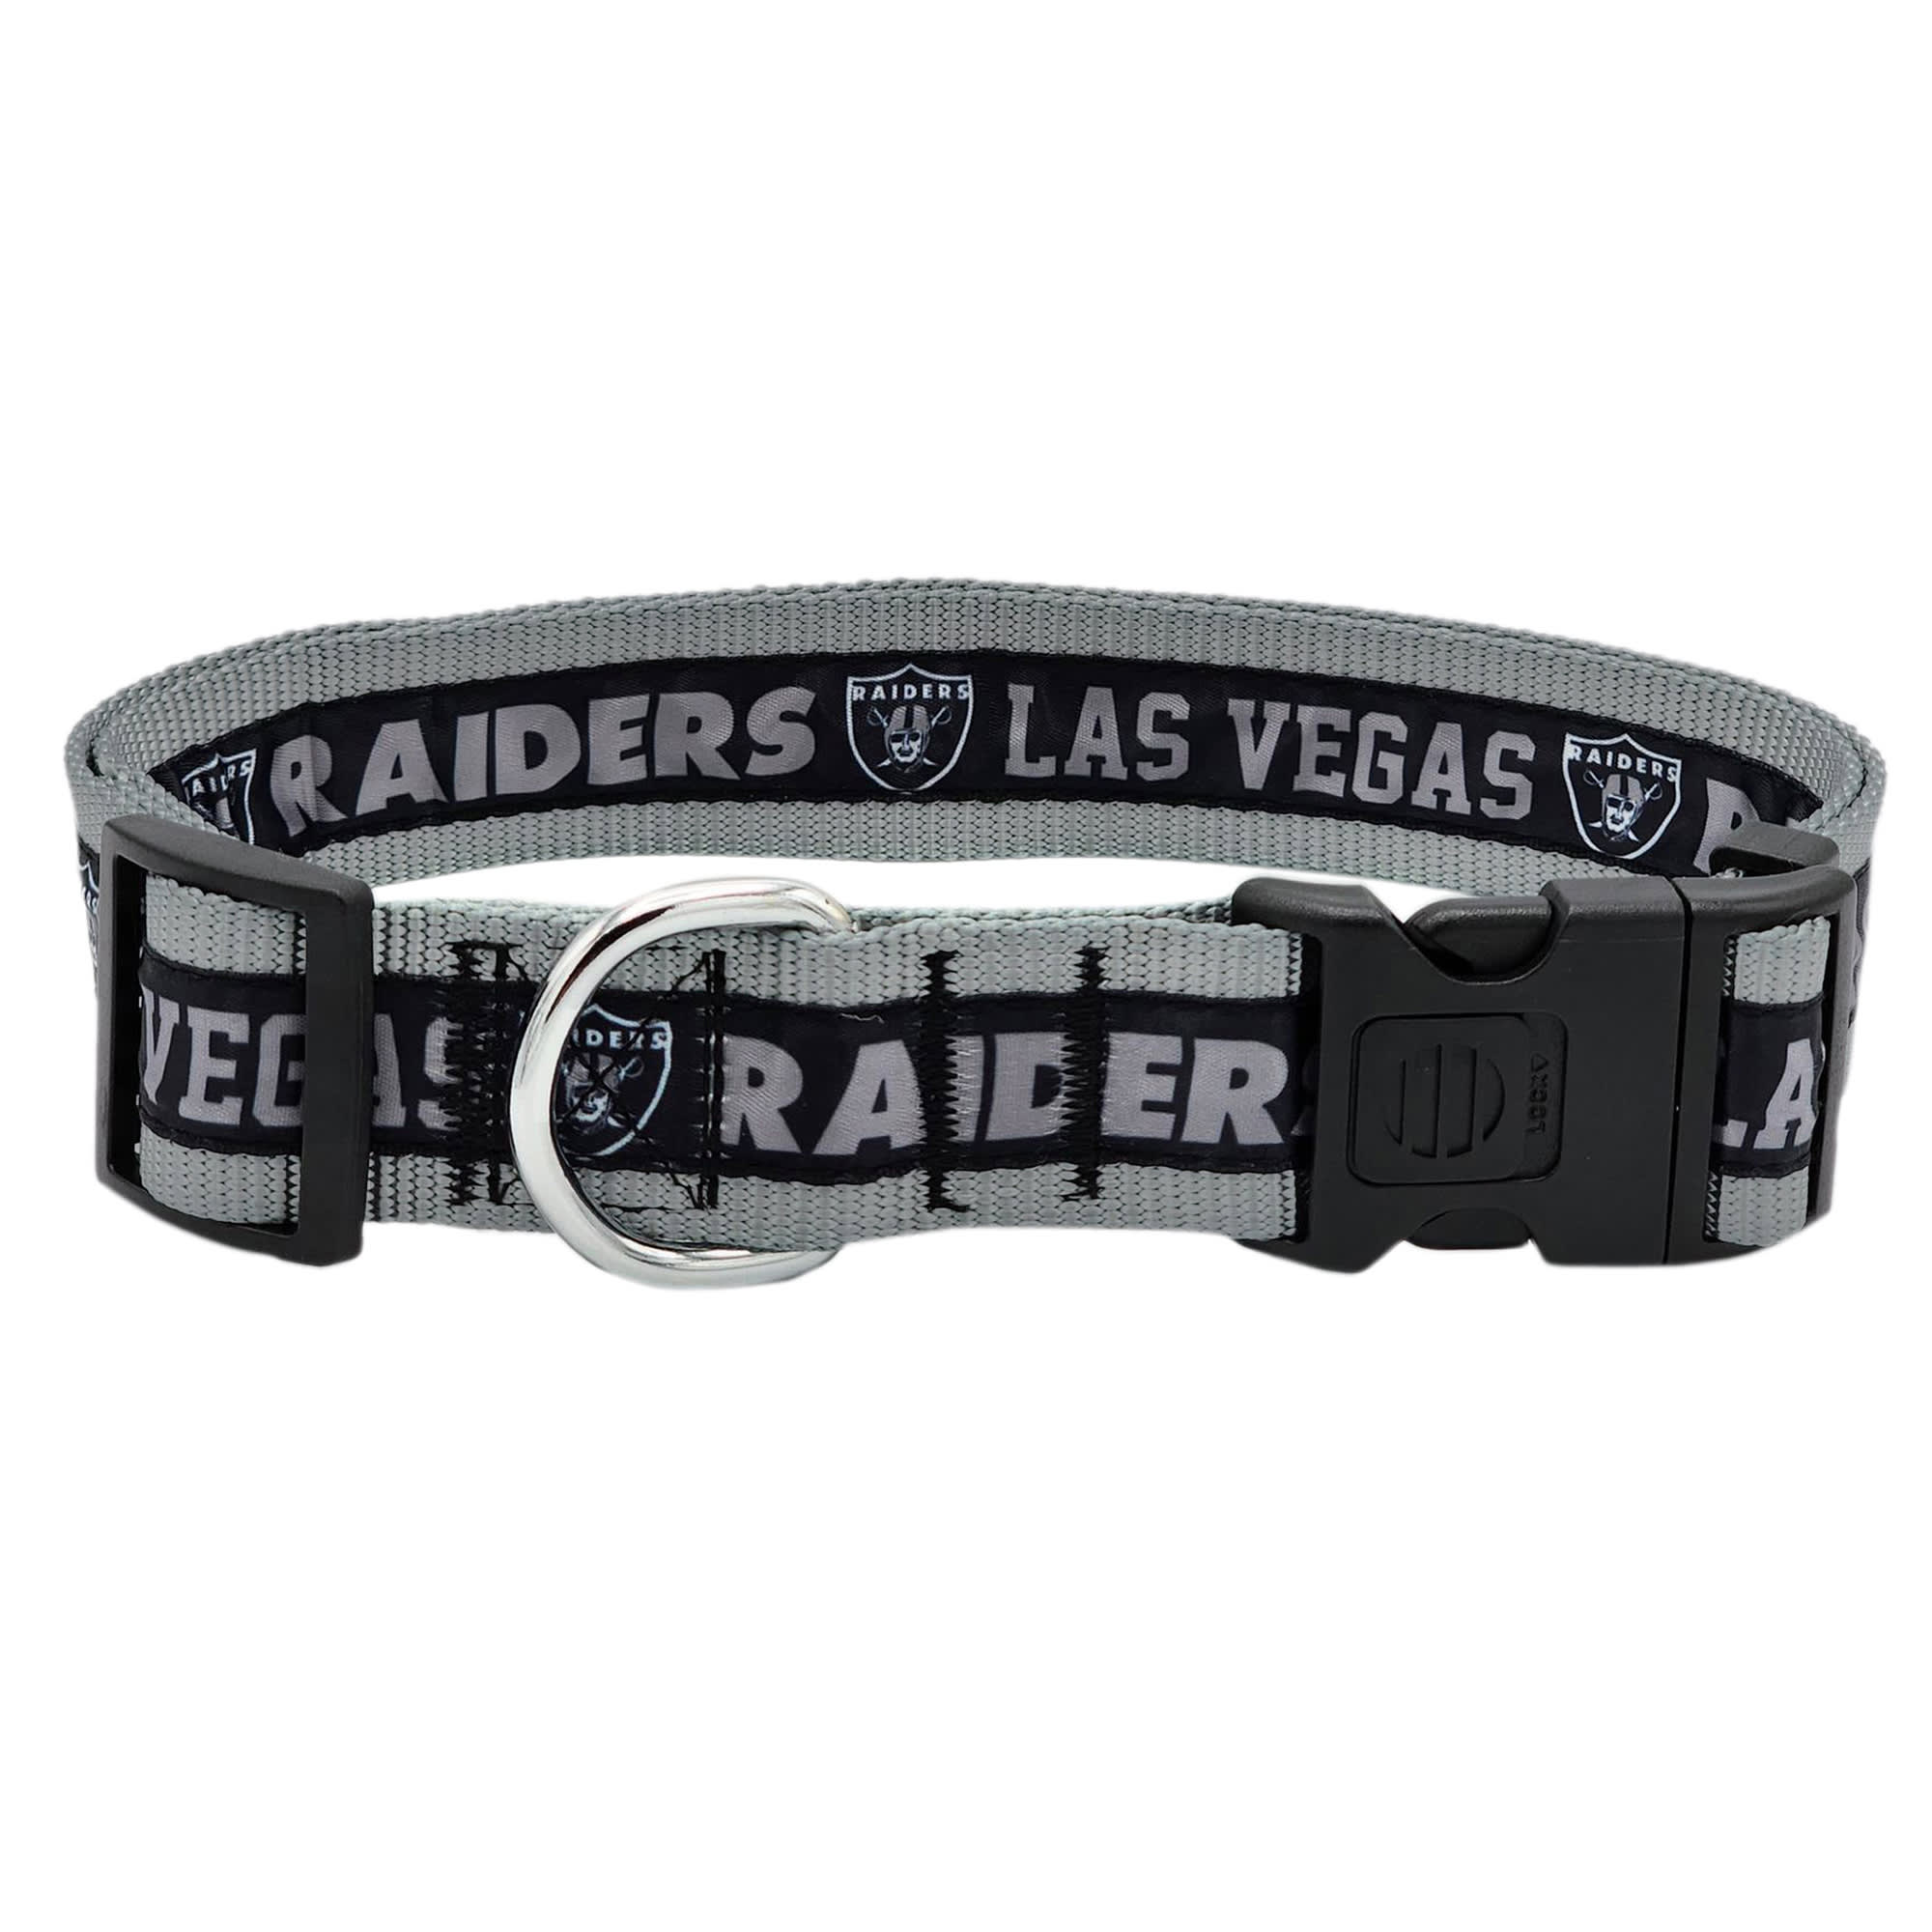 Las Vegas Raiders 1 Lanyard